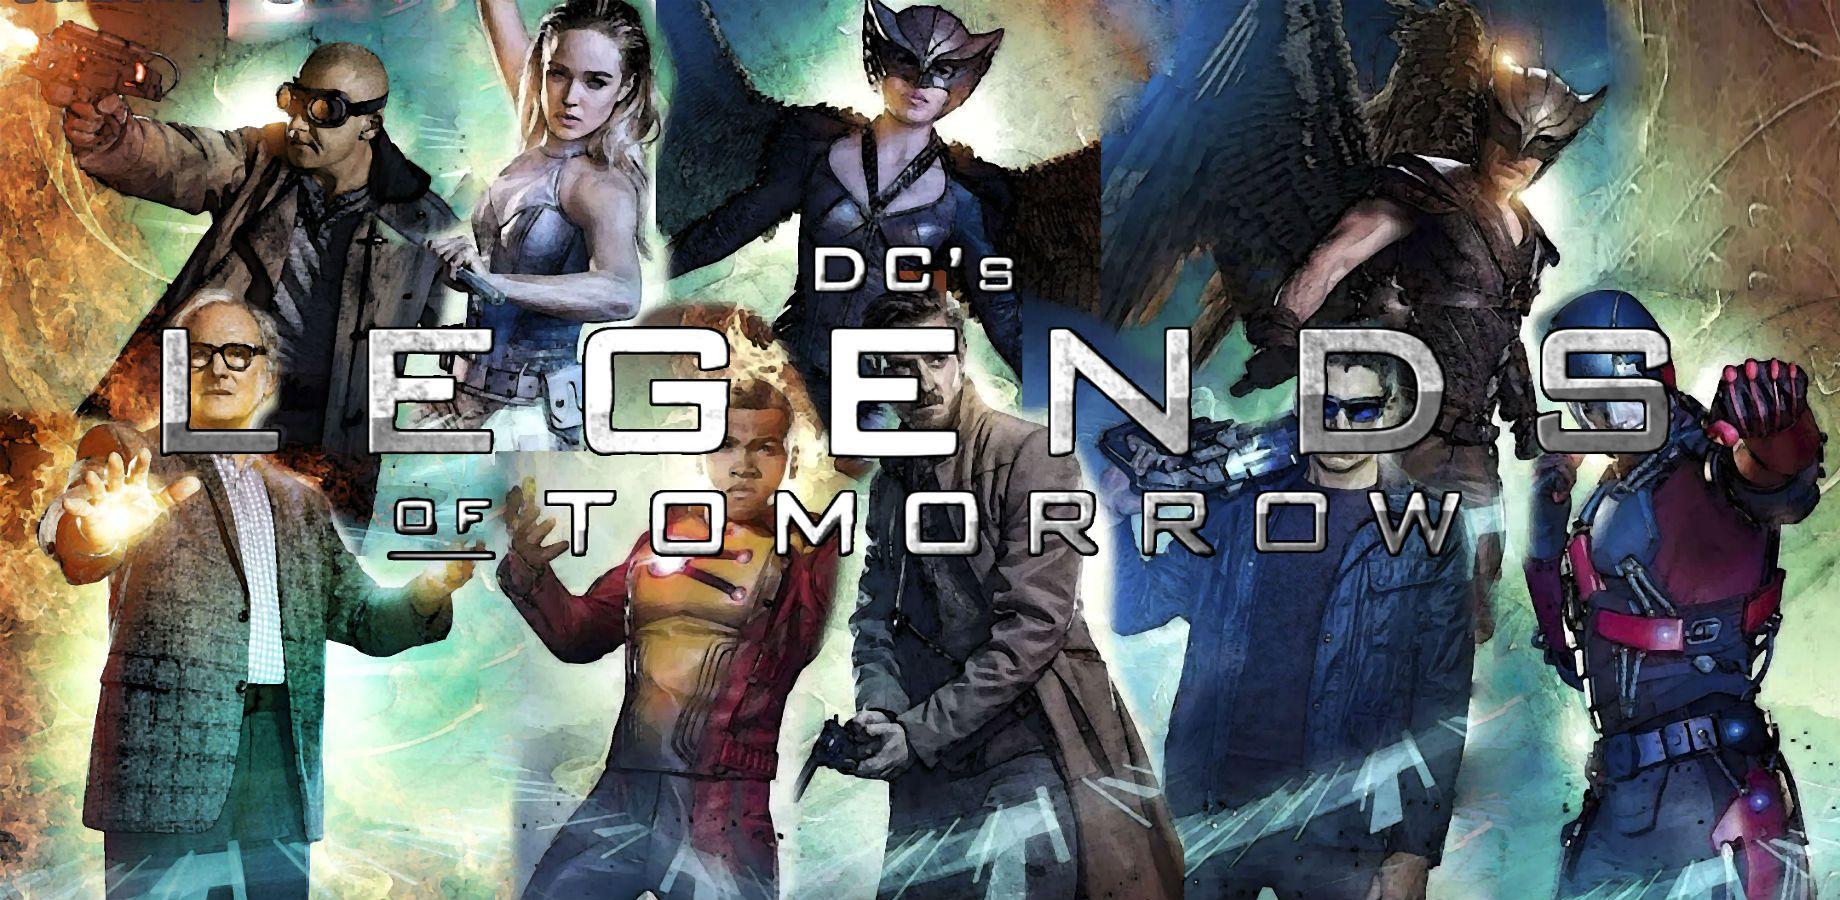 DC's Legends Of Tomorrow Wallpaper 19 X 900